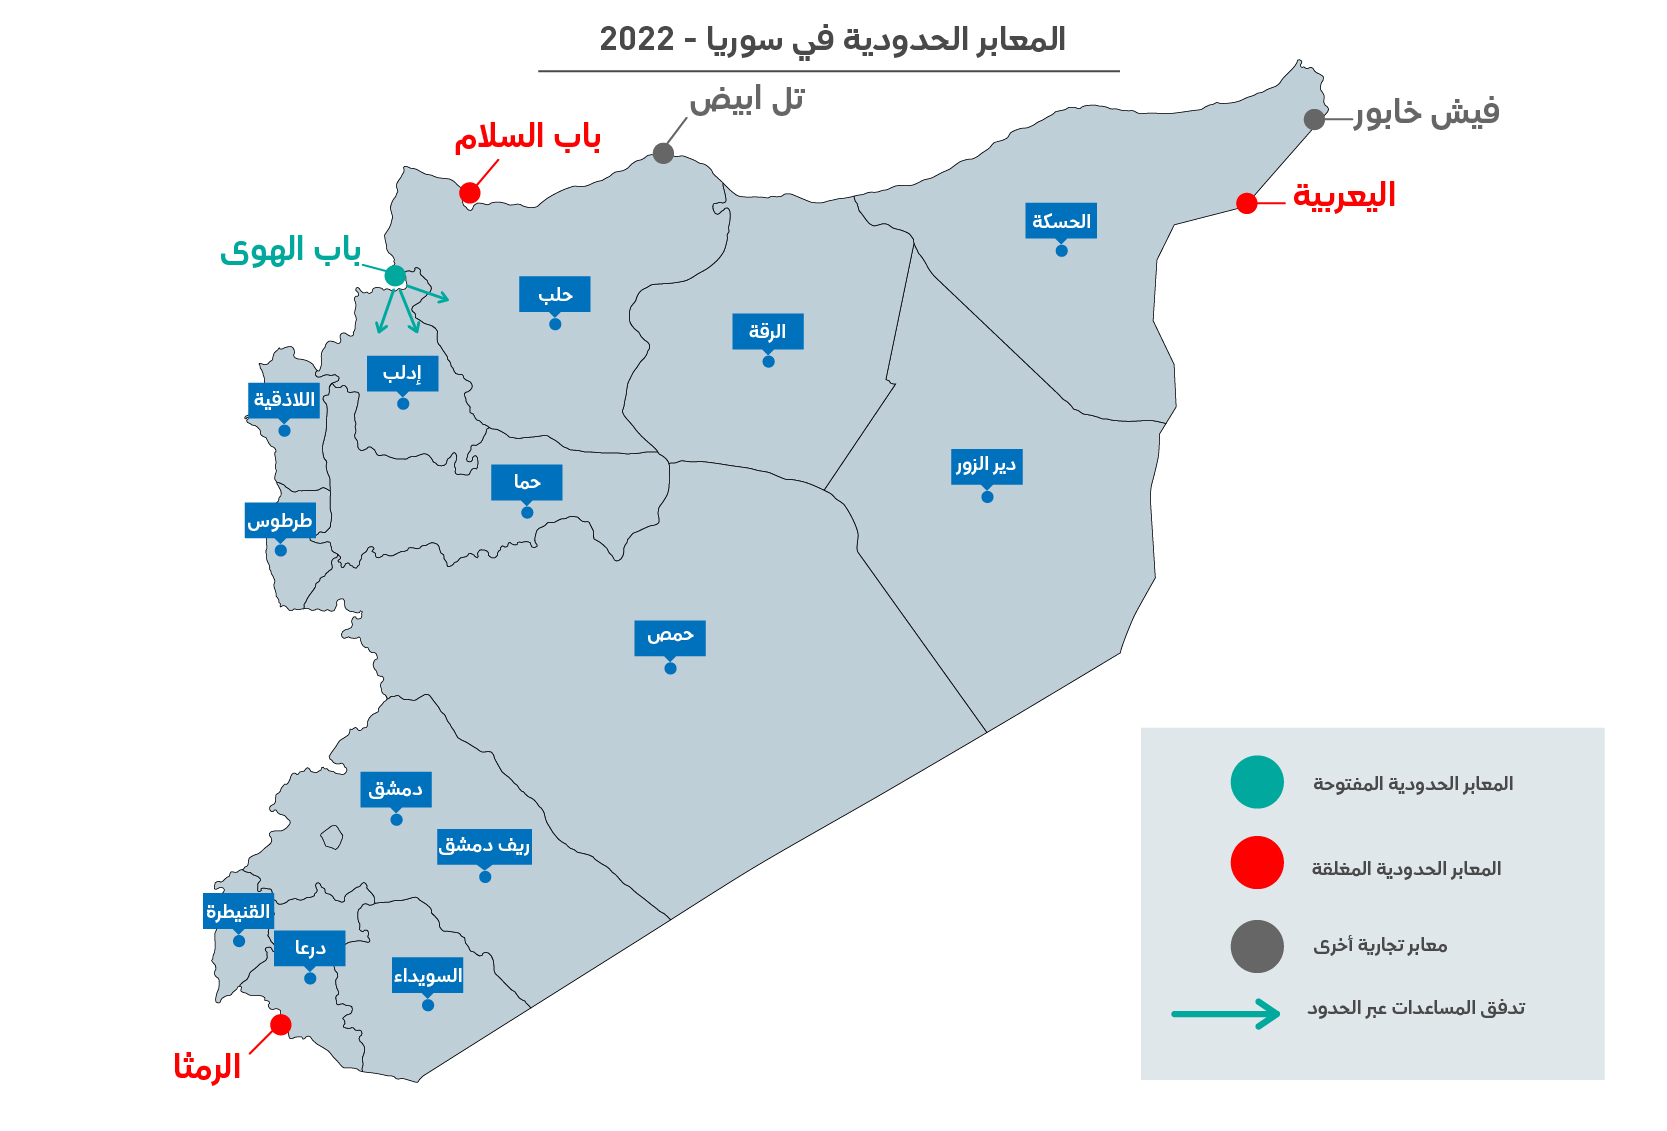 قرار مجلس الأمن الذي يقضي بعبور المساعدات عبر الحدود إلى سوريا 2022